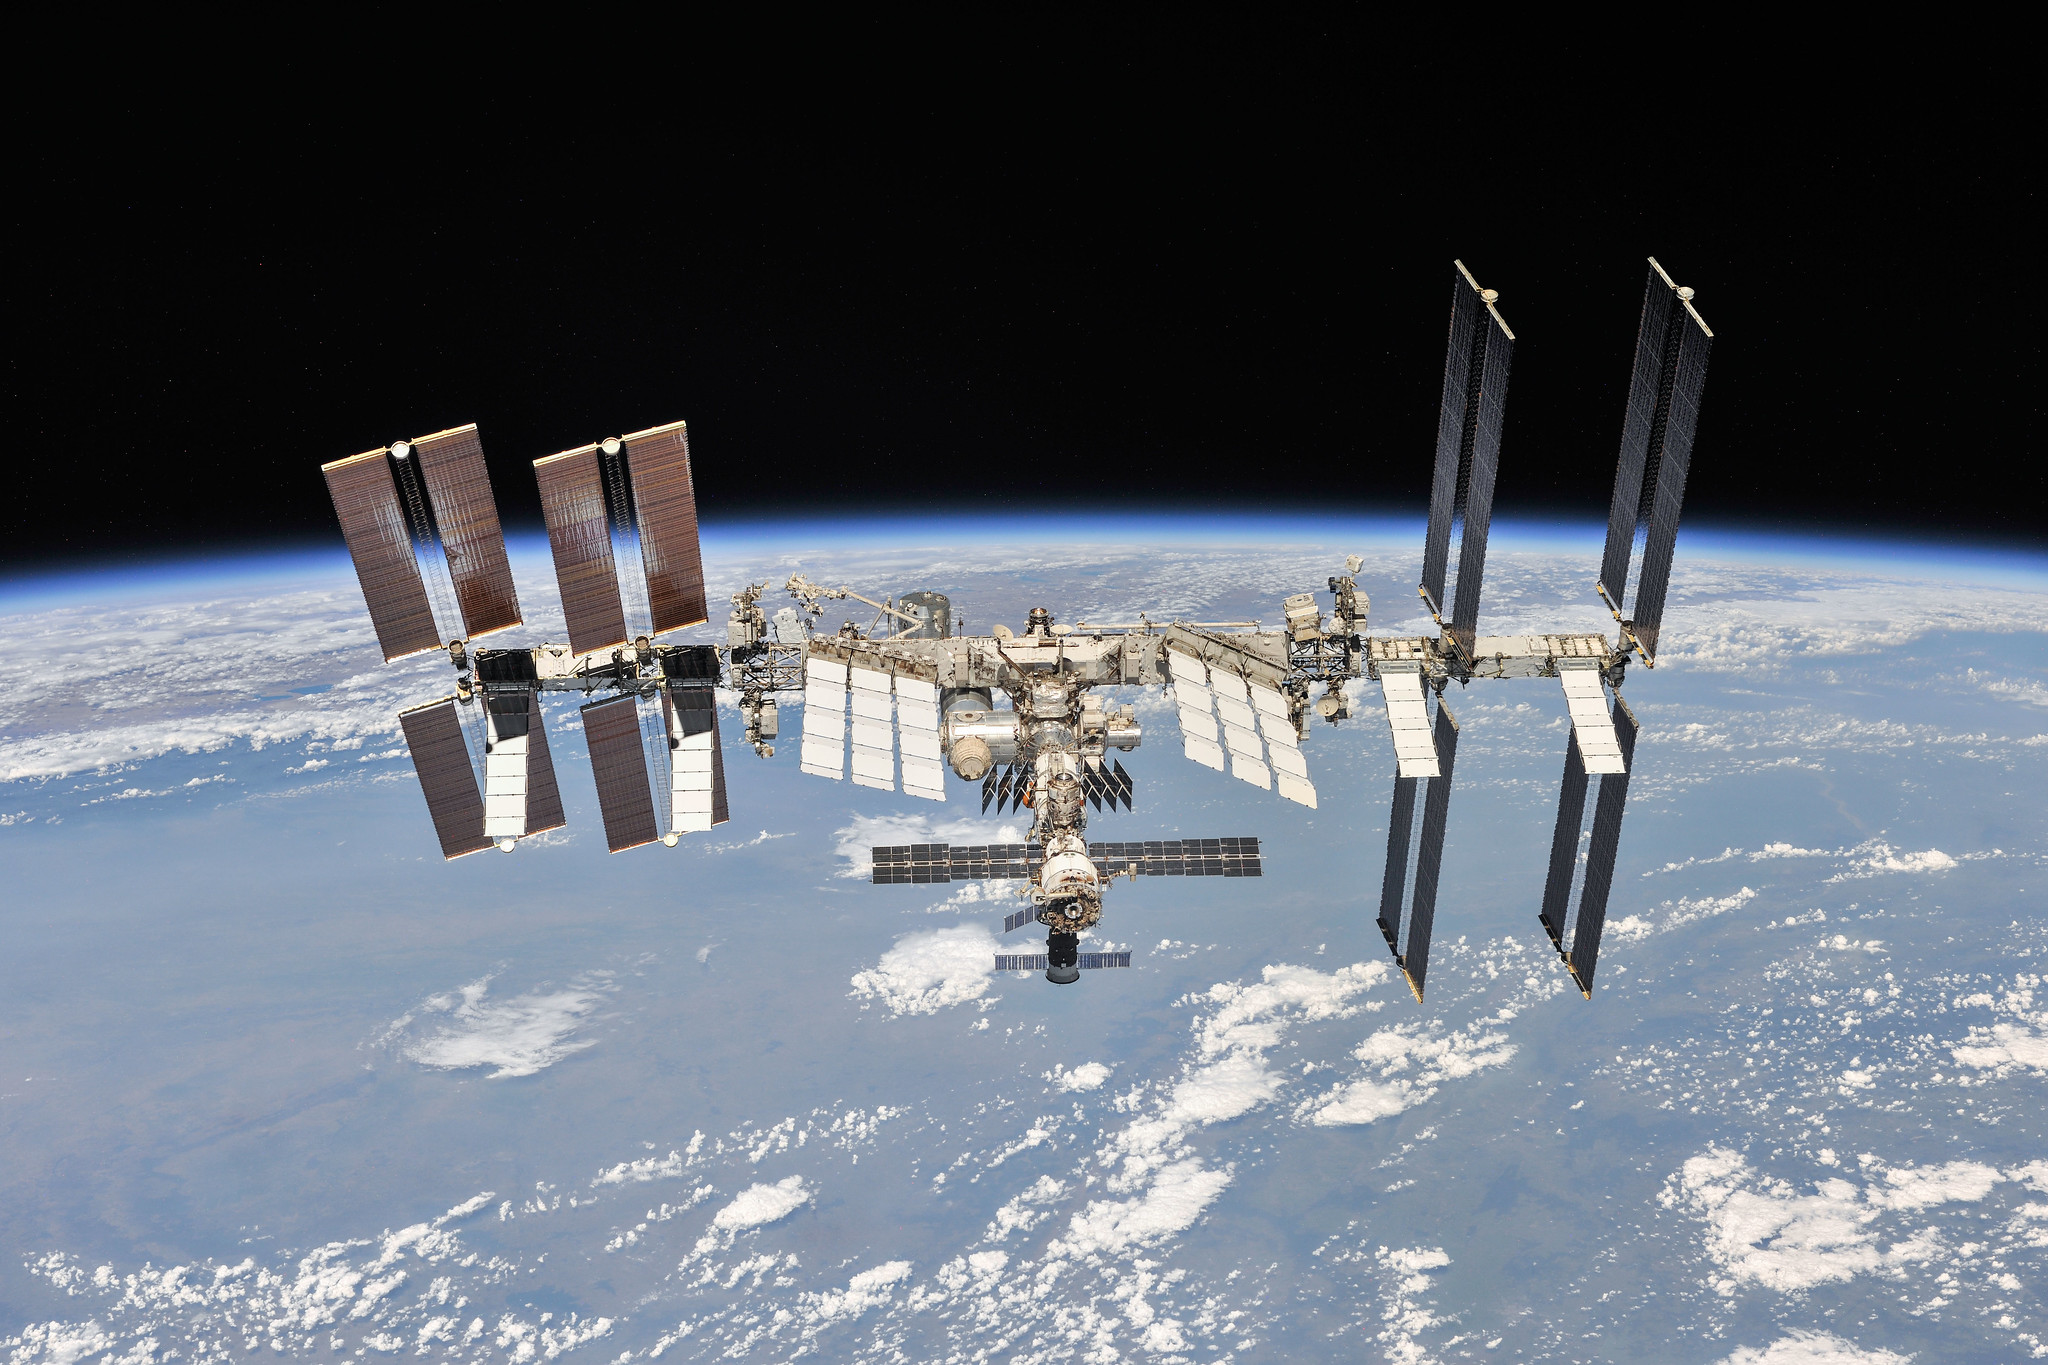 NASA, ESA, Japonia i Kanada będą korzystać z ISS do 2030 roku, potem zatopią stację w oceanie